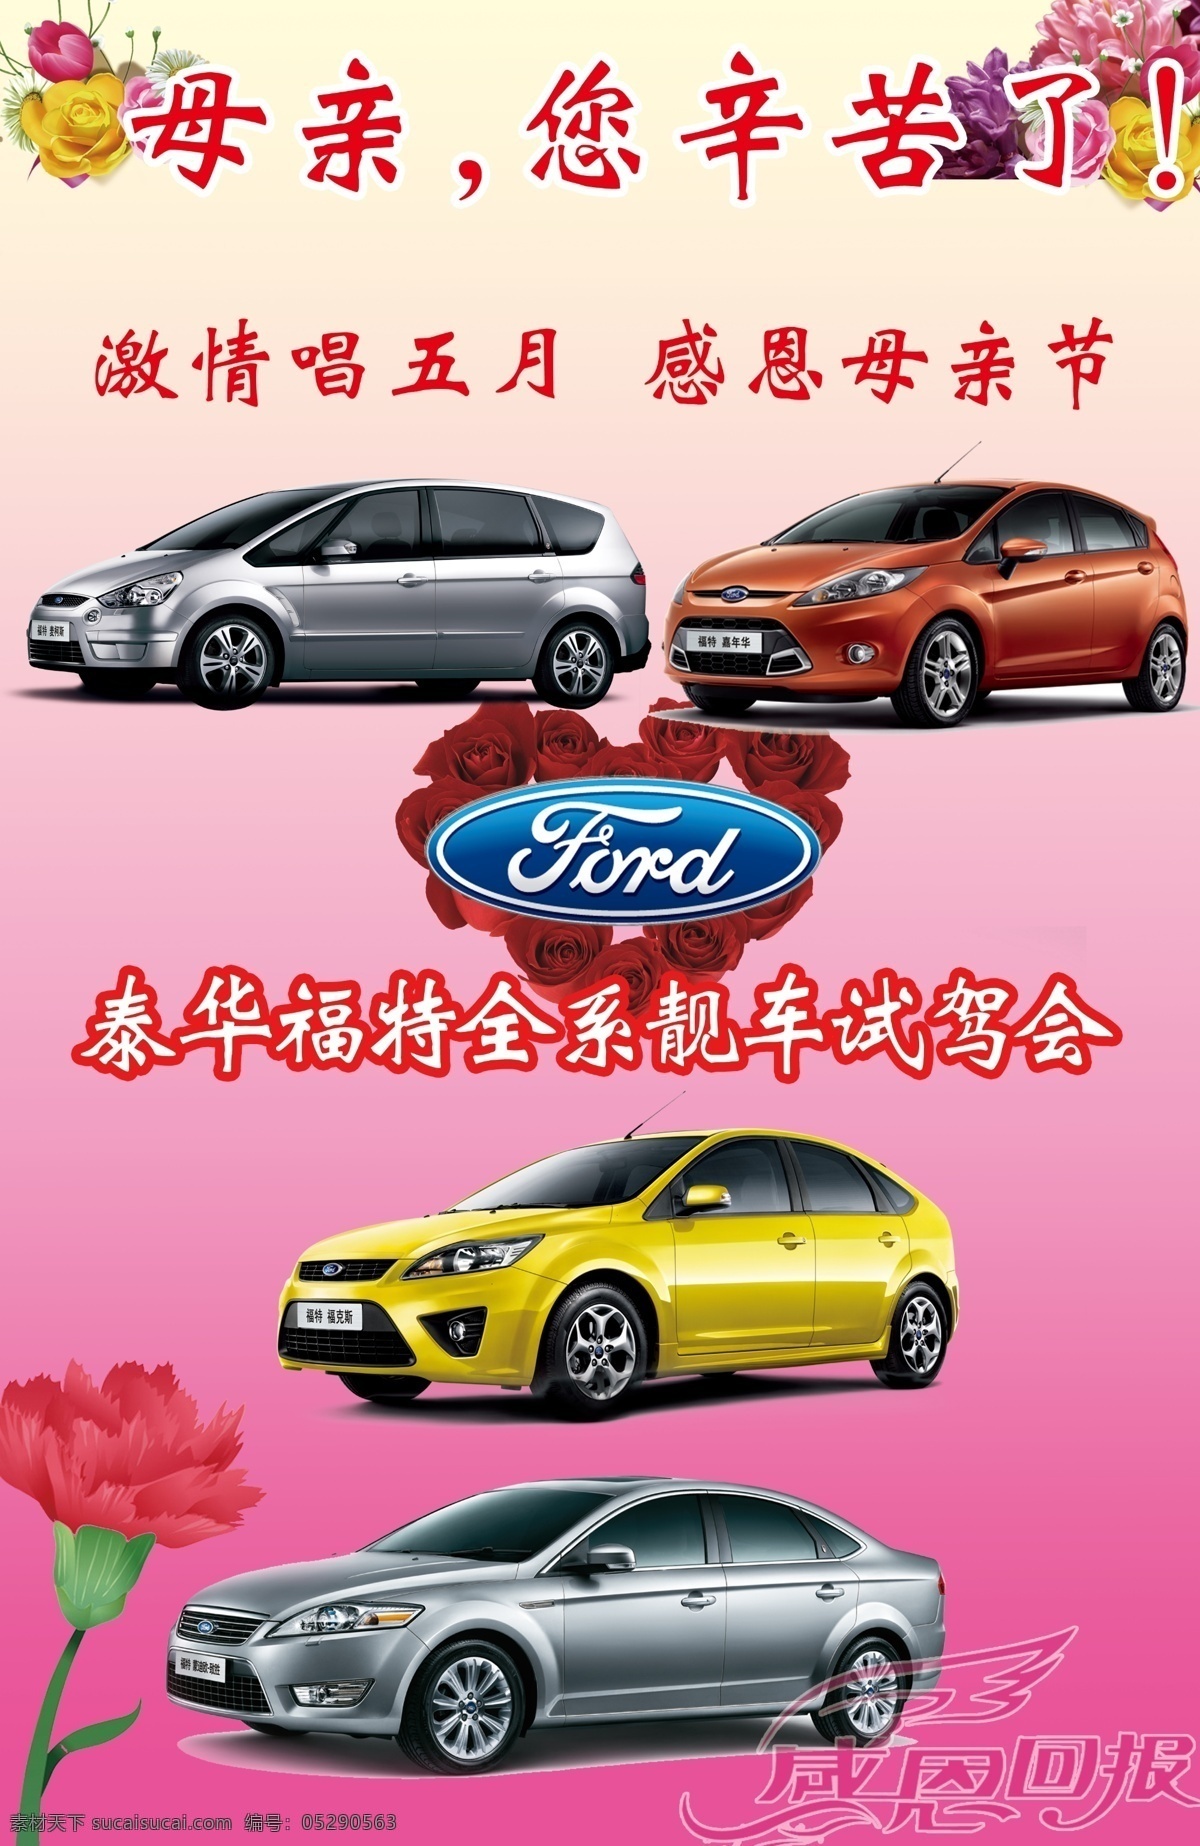 母亲节 dm宣传单 福特标志 福特汽车 广告设计模板 玫瑰花 模板下载 源文件 节日素材 母亲父亲节